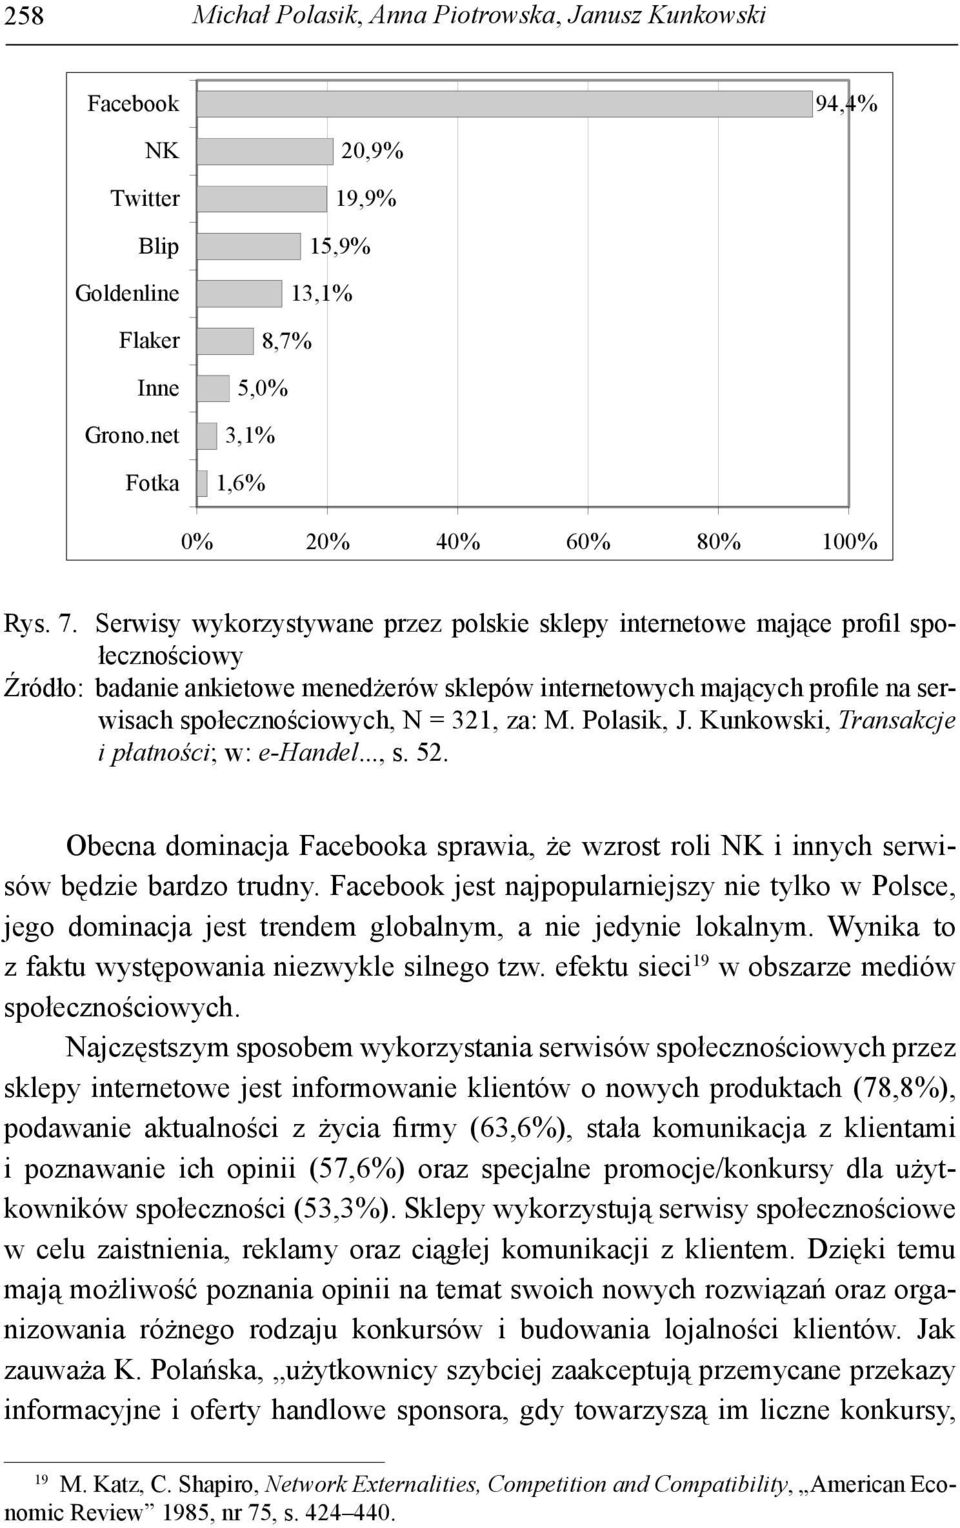 321, za: M. Polasik, J. Kunkowski, Transakcje i płatności; w: e-handel..., s. 52. Obecna dominacja Facebooka sprawia, że wzrost roli NK i innych serwisów będzie bardzo trudny.